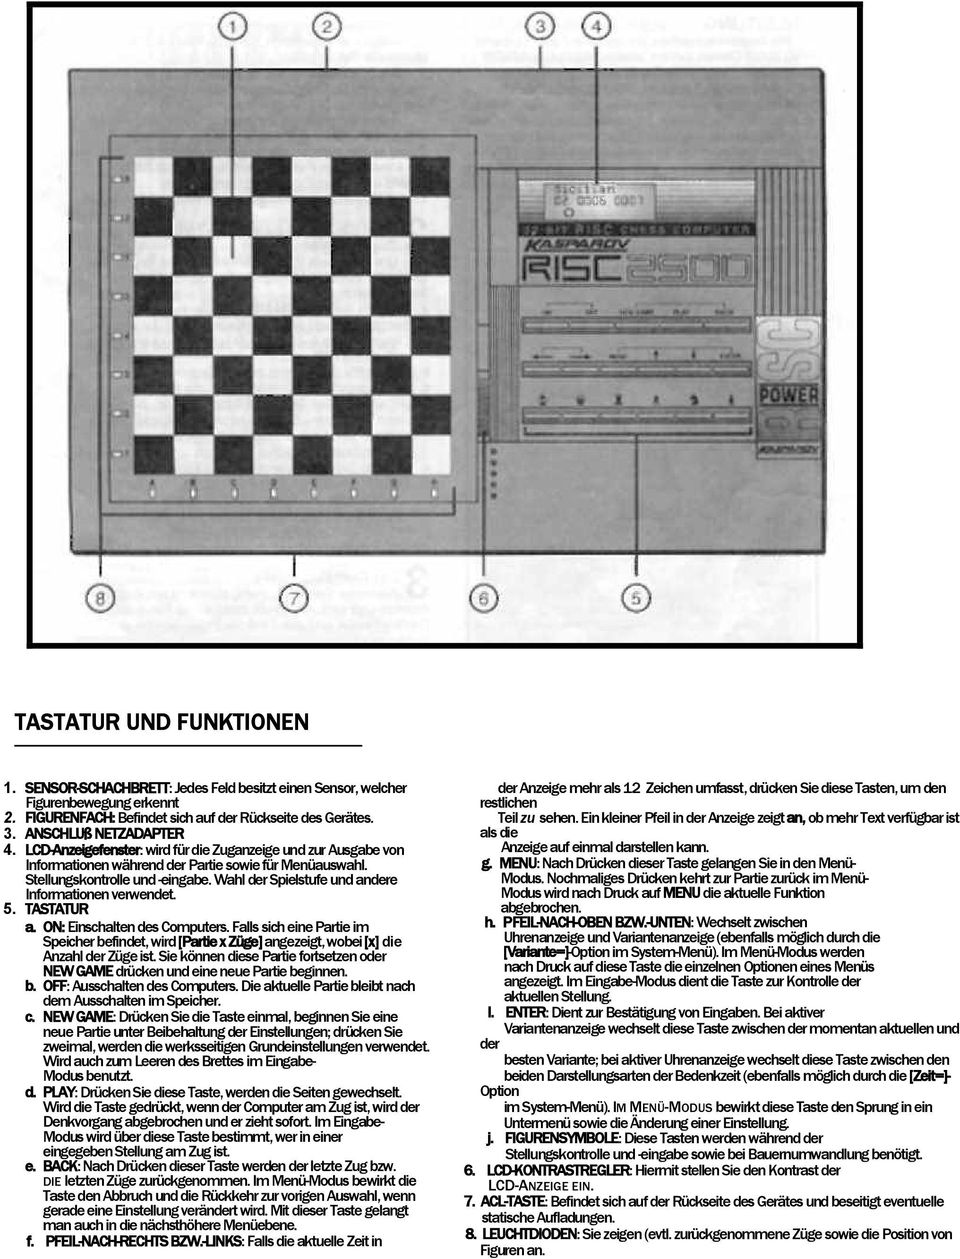 Wahl der Spielstufe und andere Informationen verwendet. 5. TASTATUR a. ON: Einschalten des Computers.